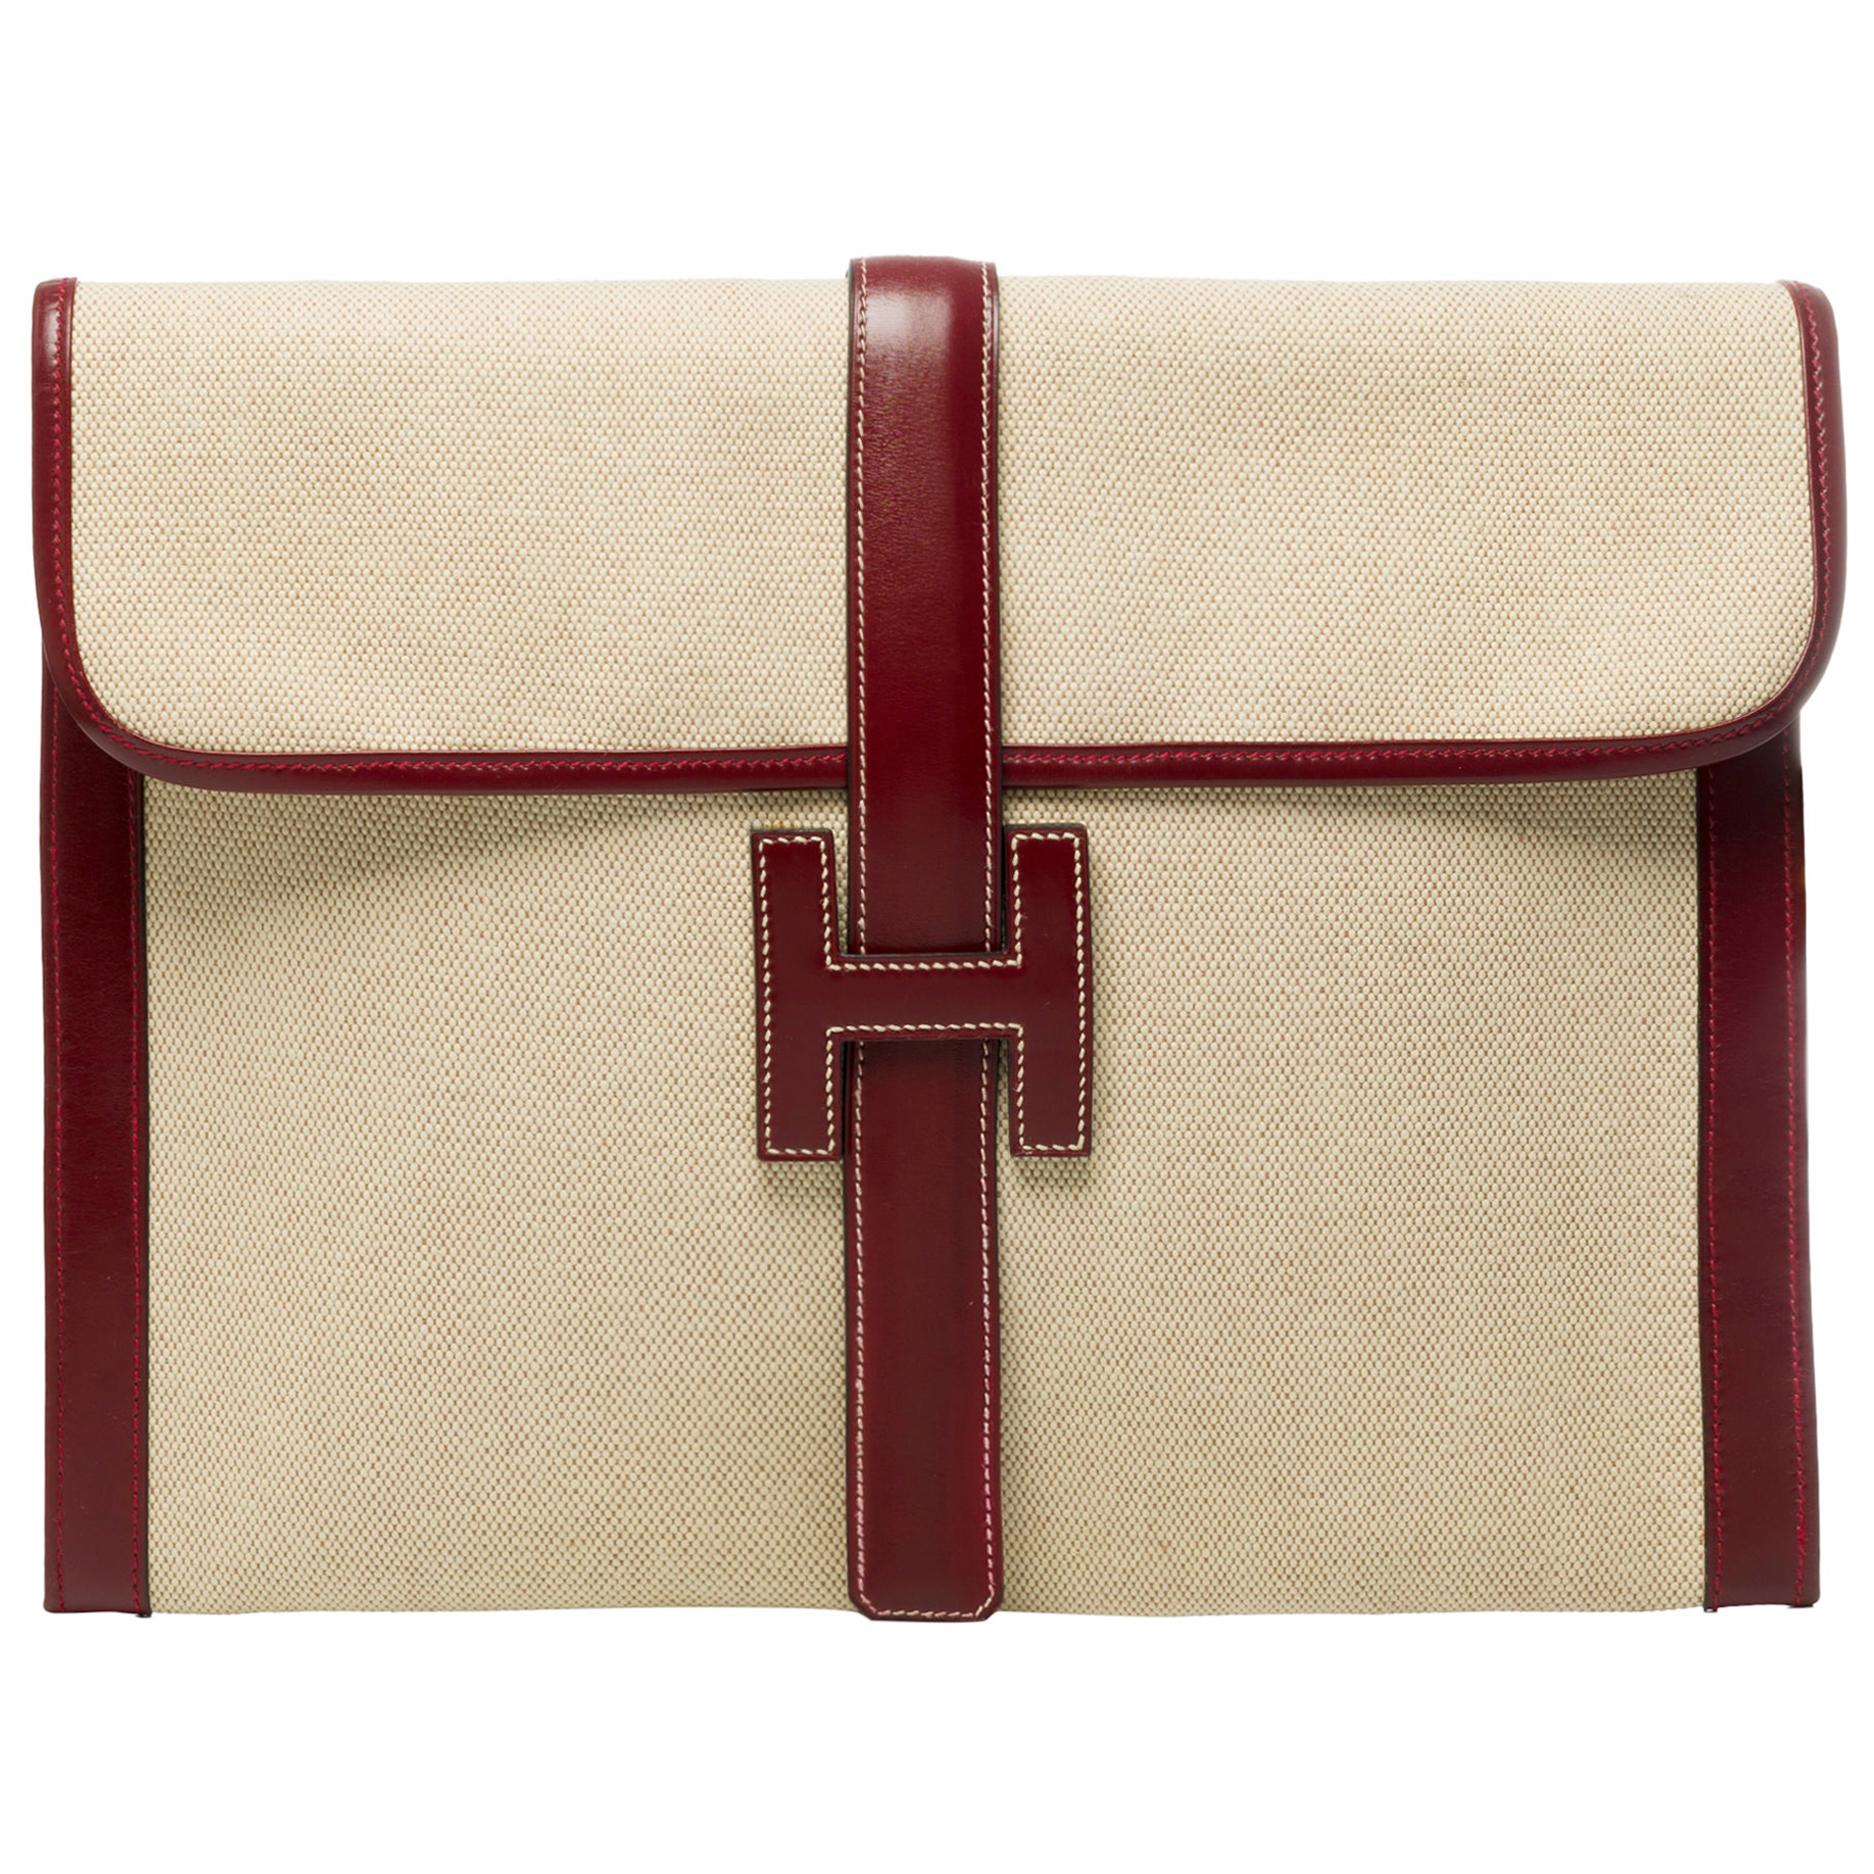 Beautiful bi-material Hermès "Jige" clutch large size in canvas & box leather